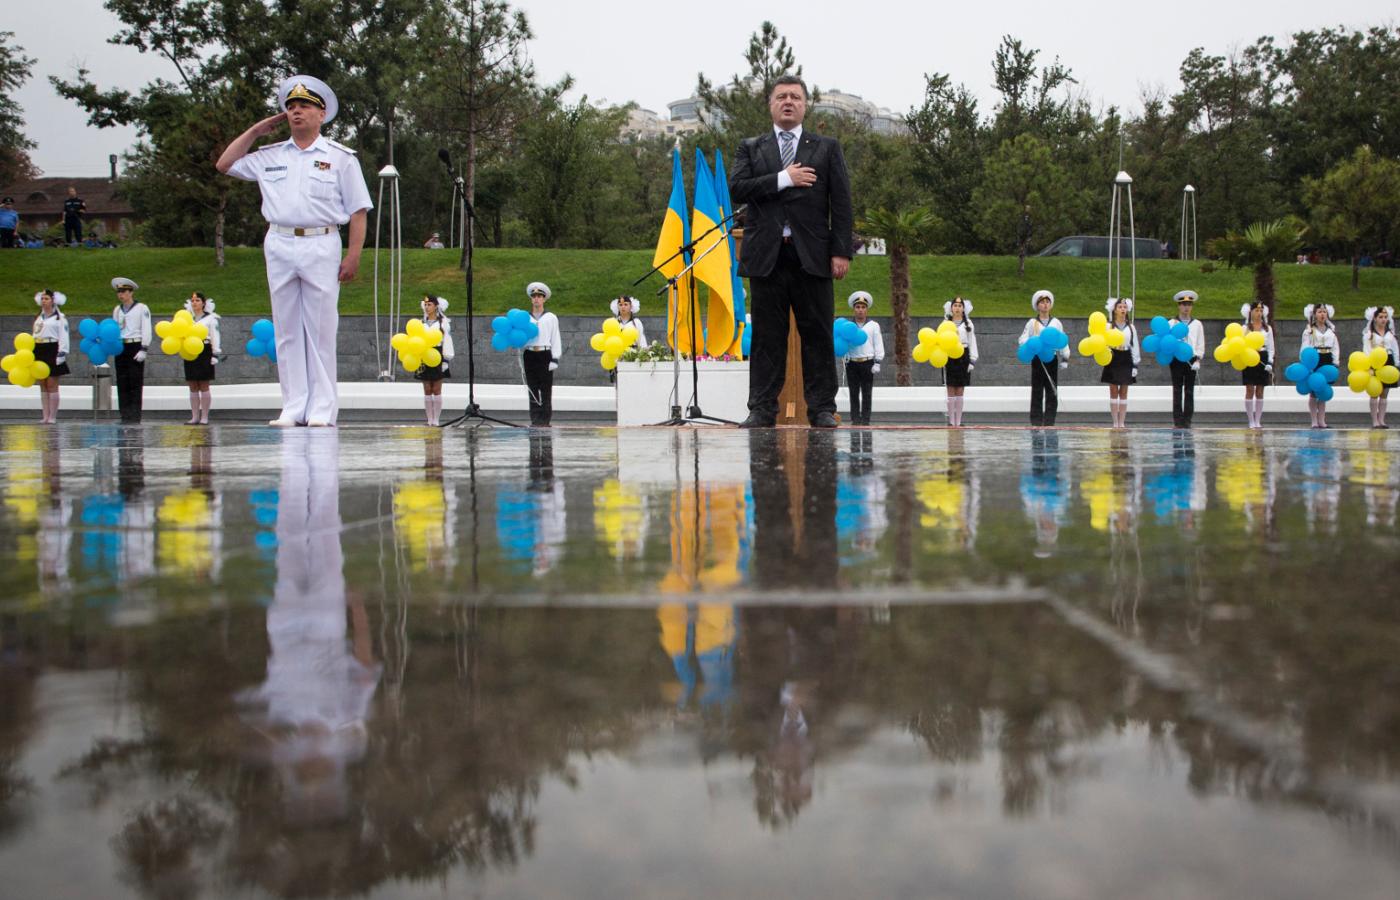 Prezydent Ukrainy Petro Poroszenko słucha hymnu narodowego podczas obchodów Dnia Niepodległości w Odessie, 24 sierpnia 2014